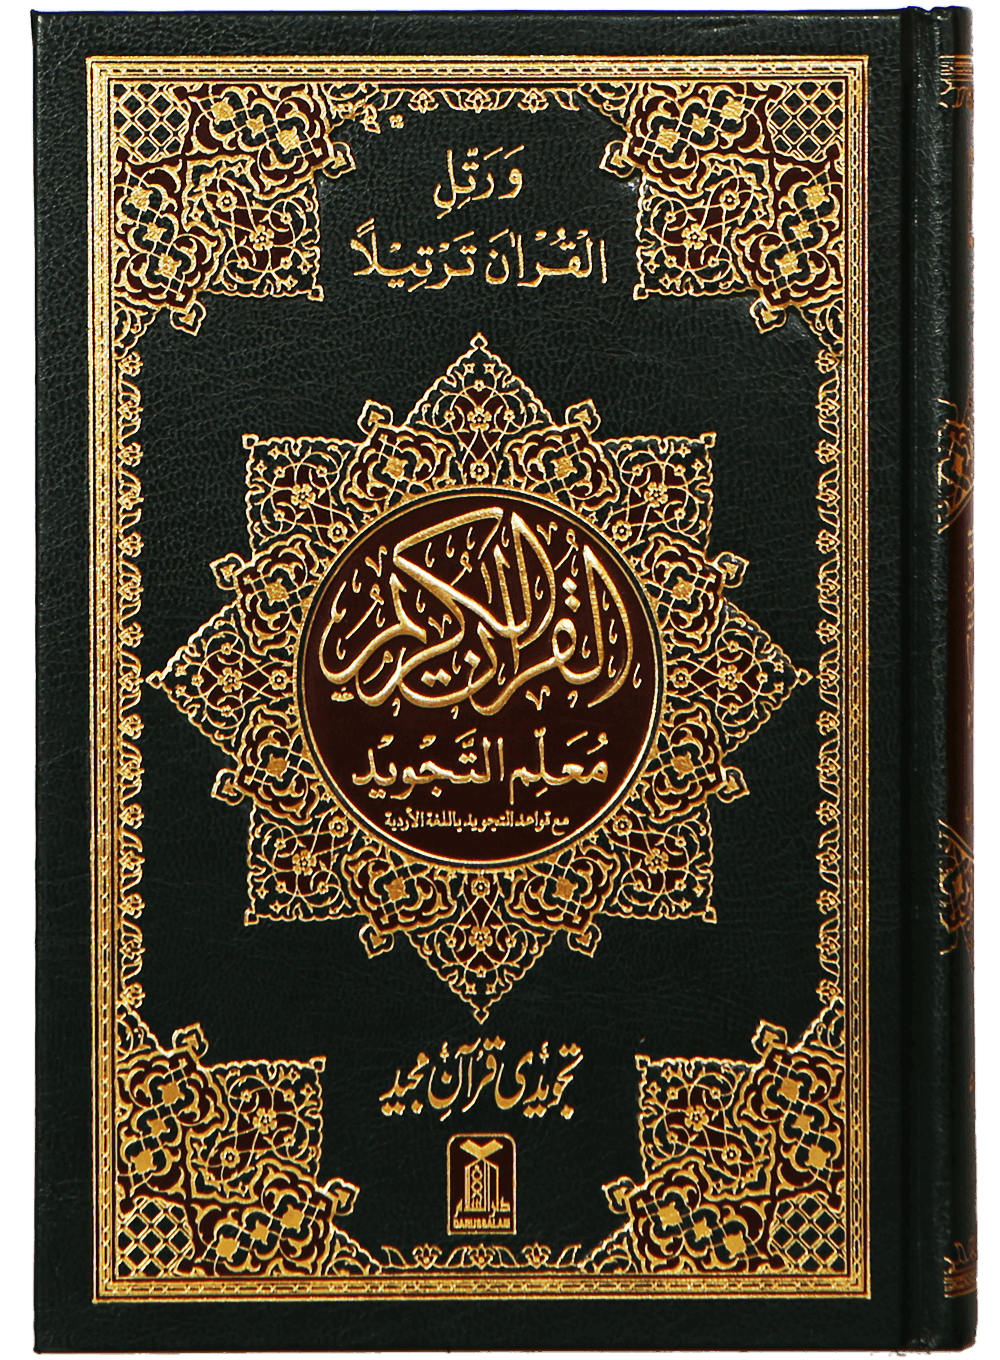 Книга мусульман 5. Коран обложка. Обложка мусульманской книги. Обложка для книги Коран. Кур'АН.